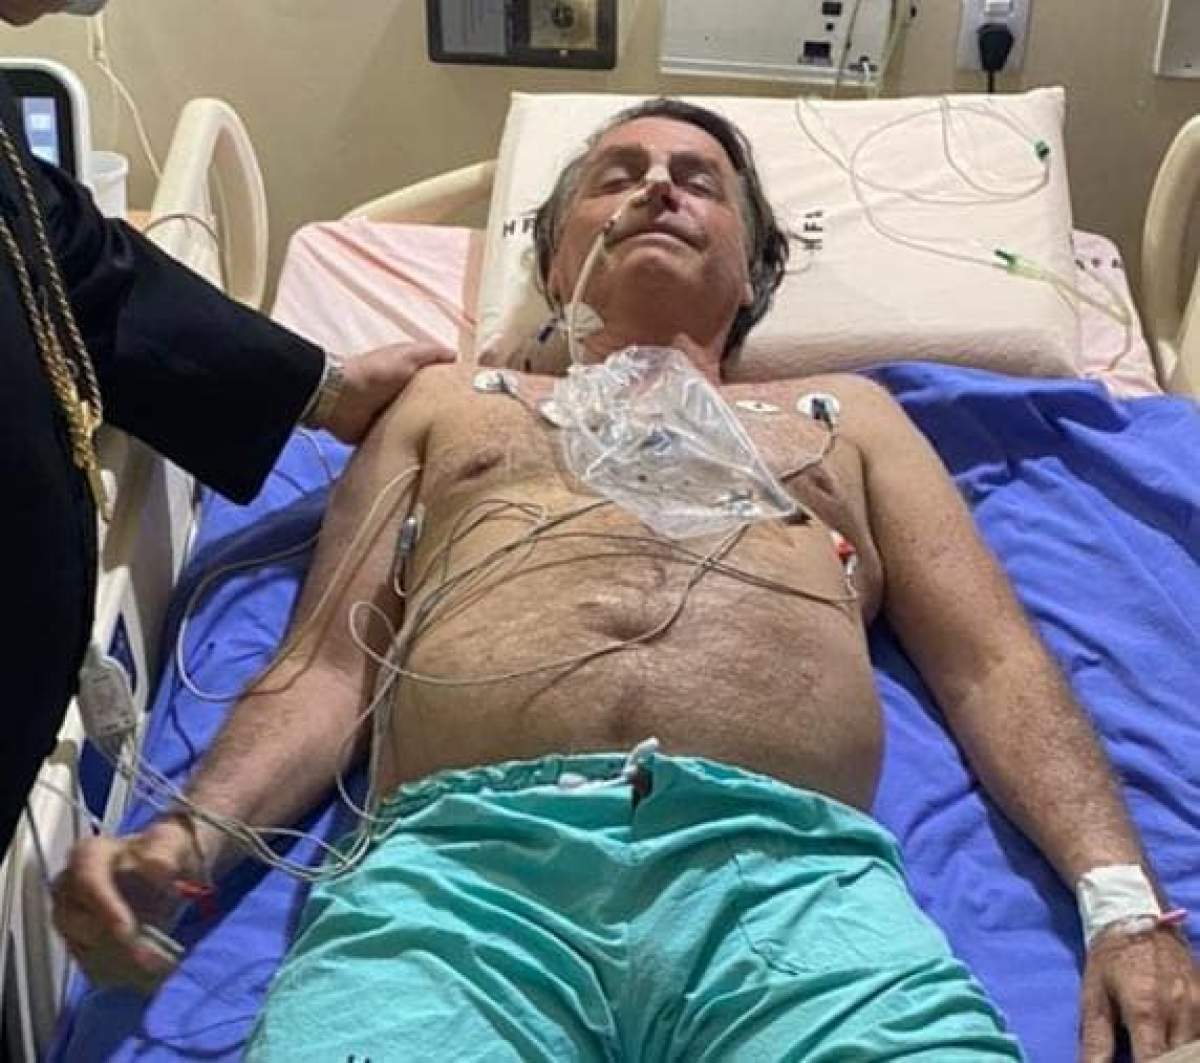 Jair Bolsonaro, președintele Braziliei, internat de urgență cu diagnosticul de sughițuri cronice. Ce au spus medicii